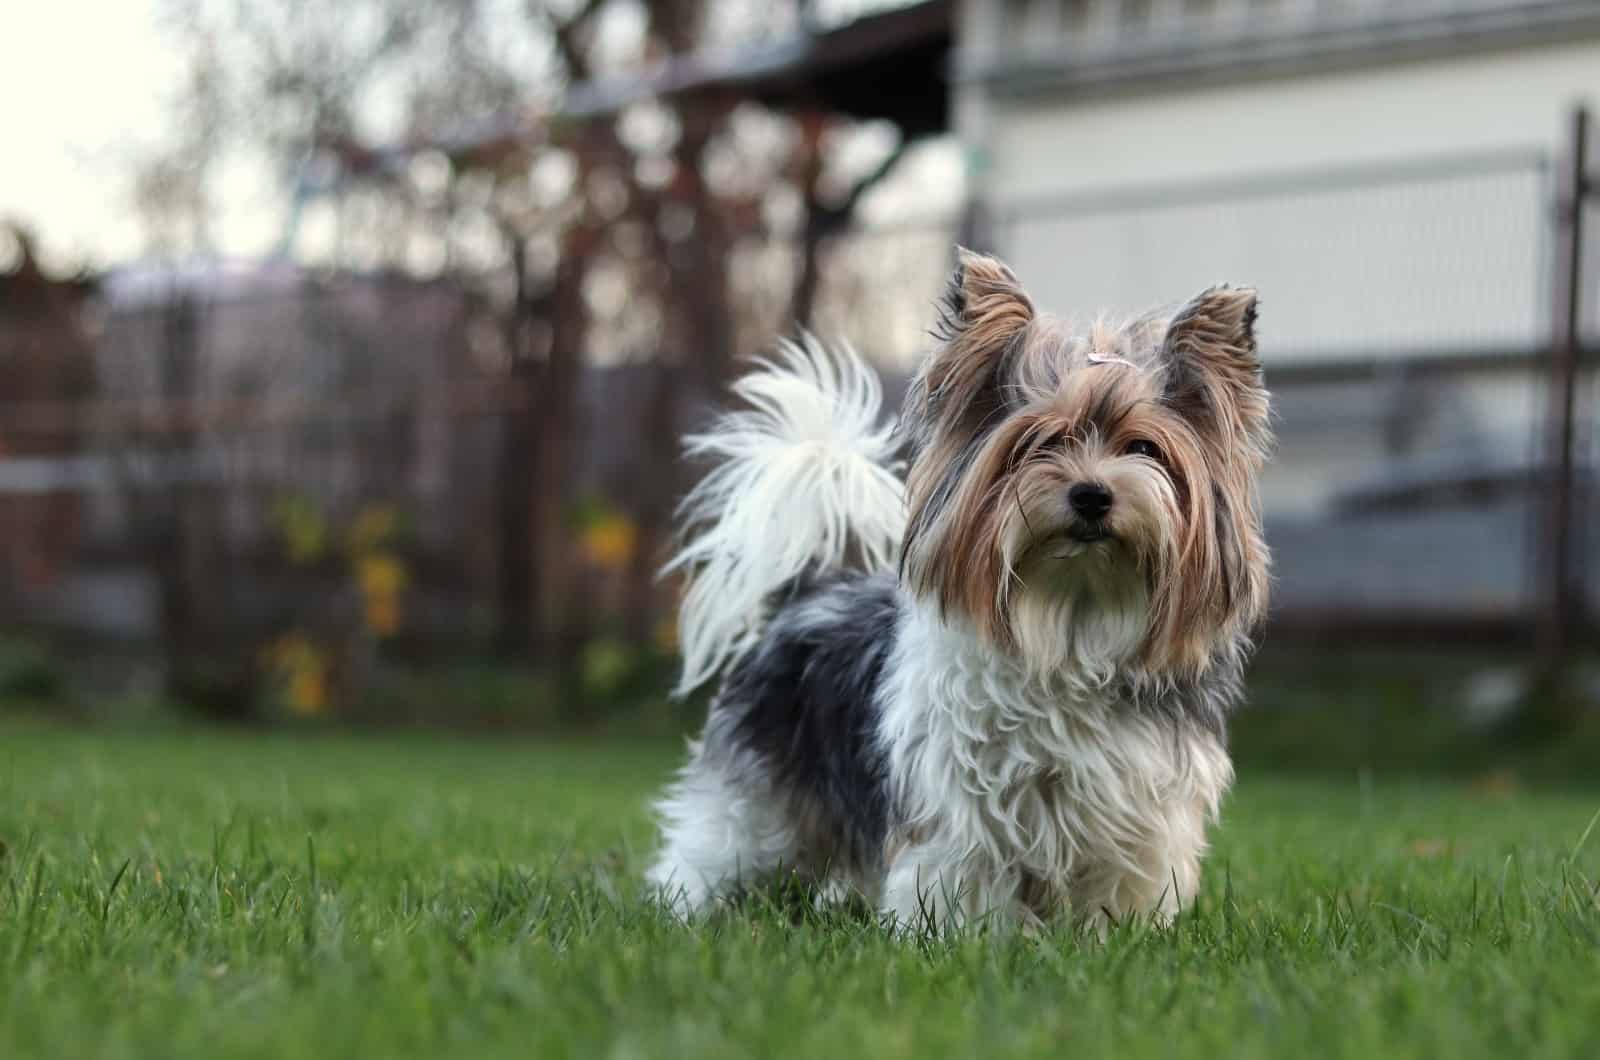 Biewer Terrier standing on grass